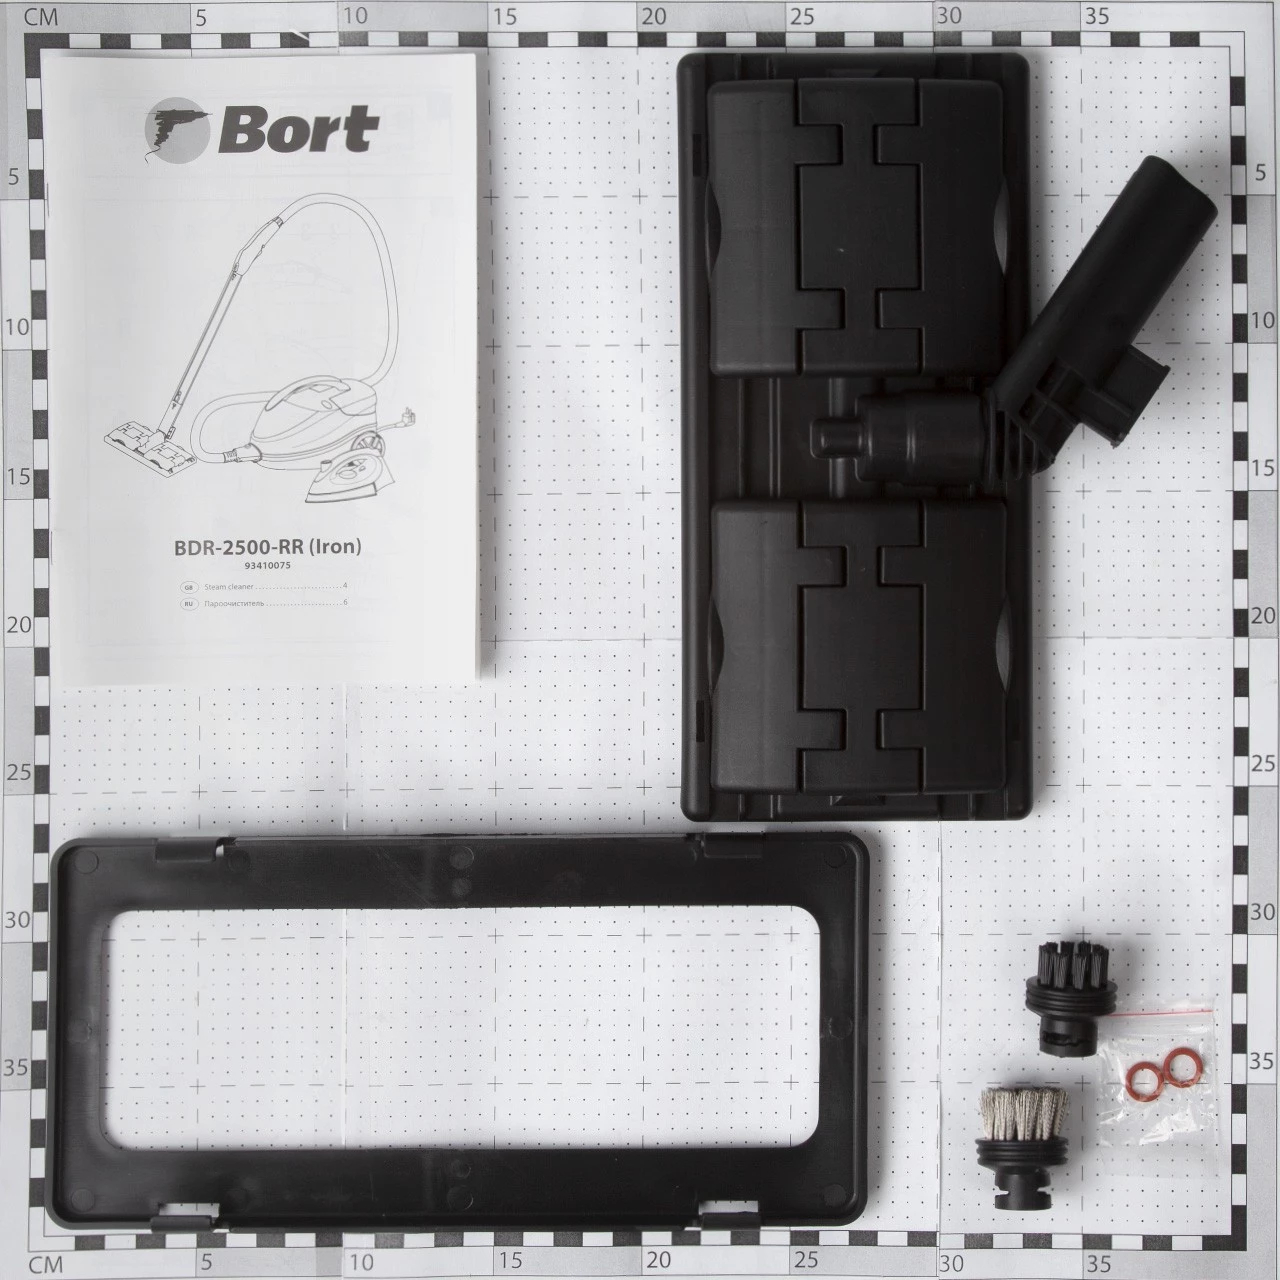 Пароочиститель Bort BDR-2500-RR-Iron (93410075) - фото 4